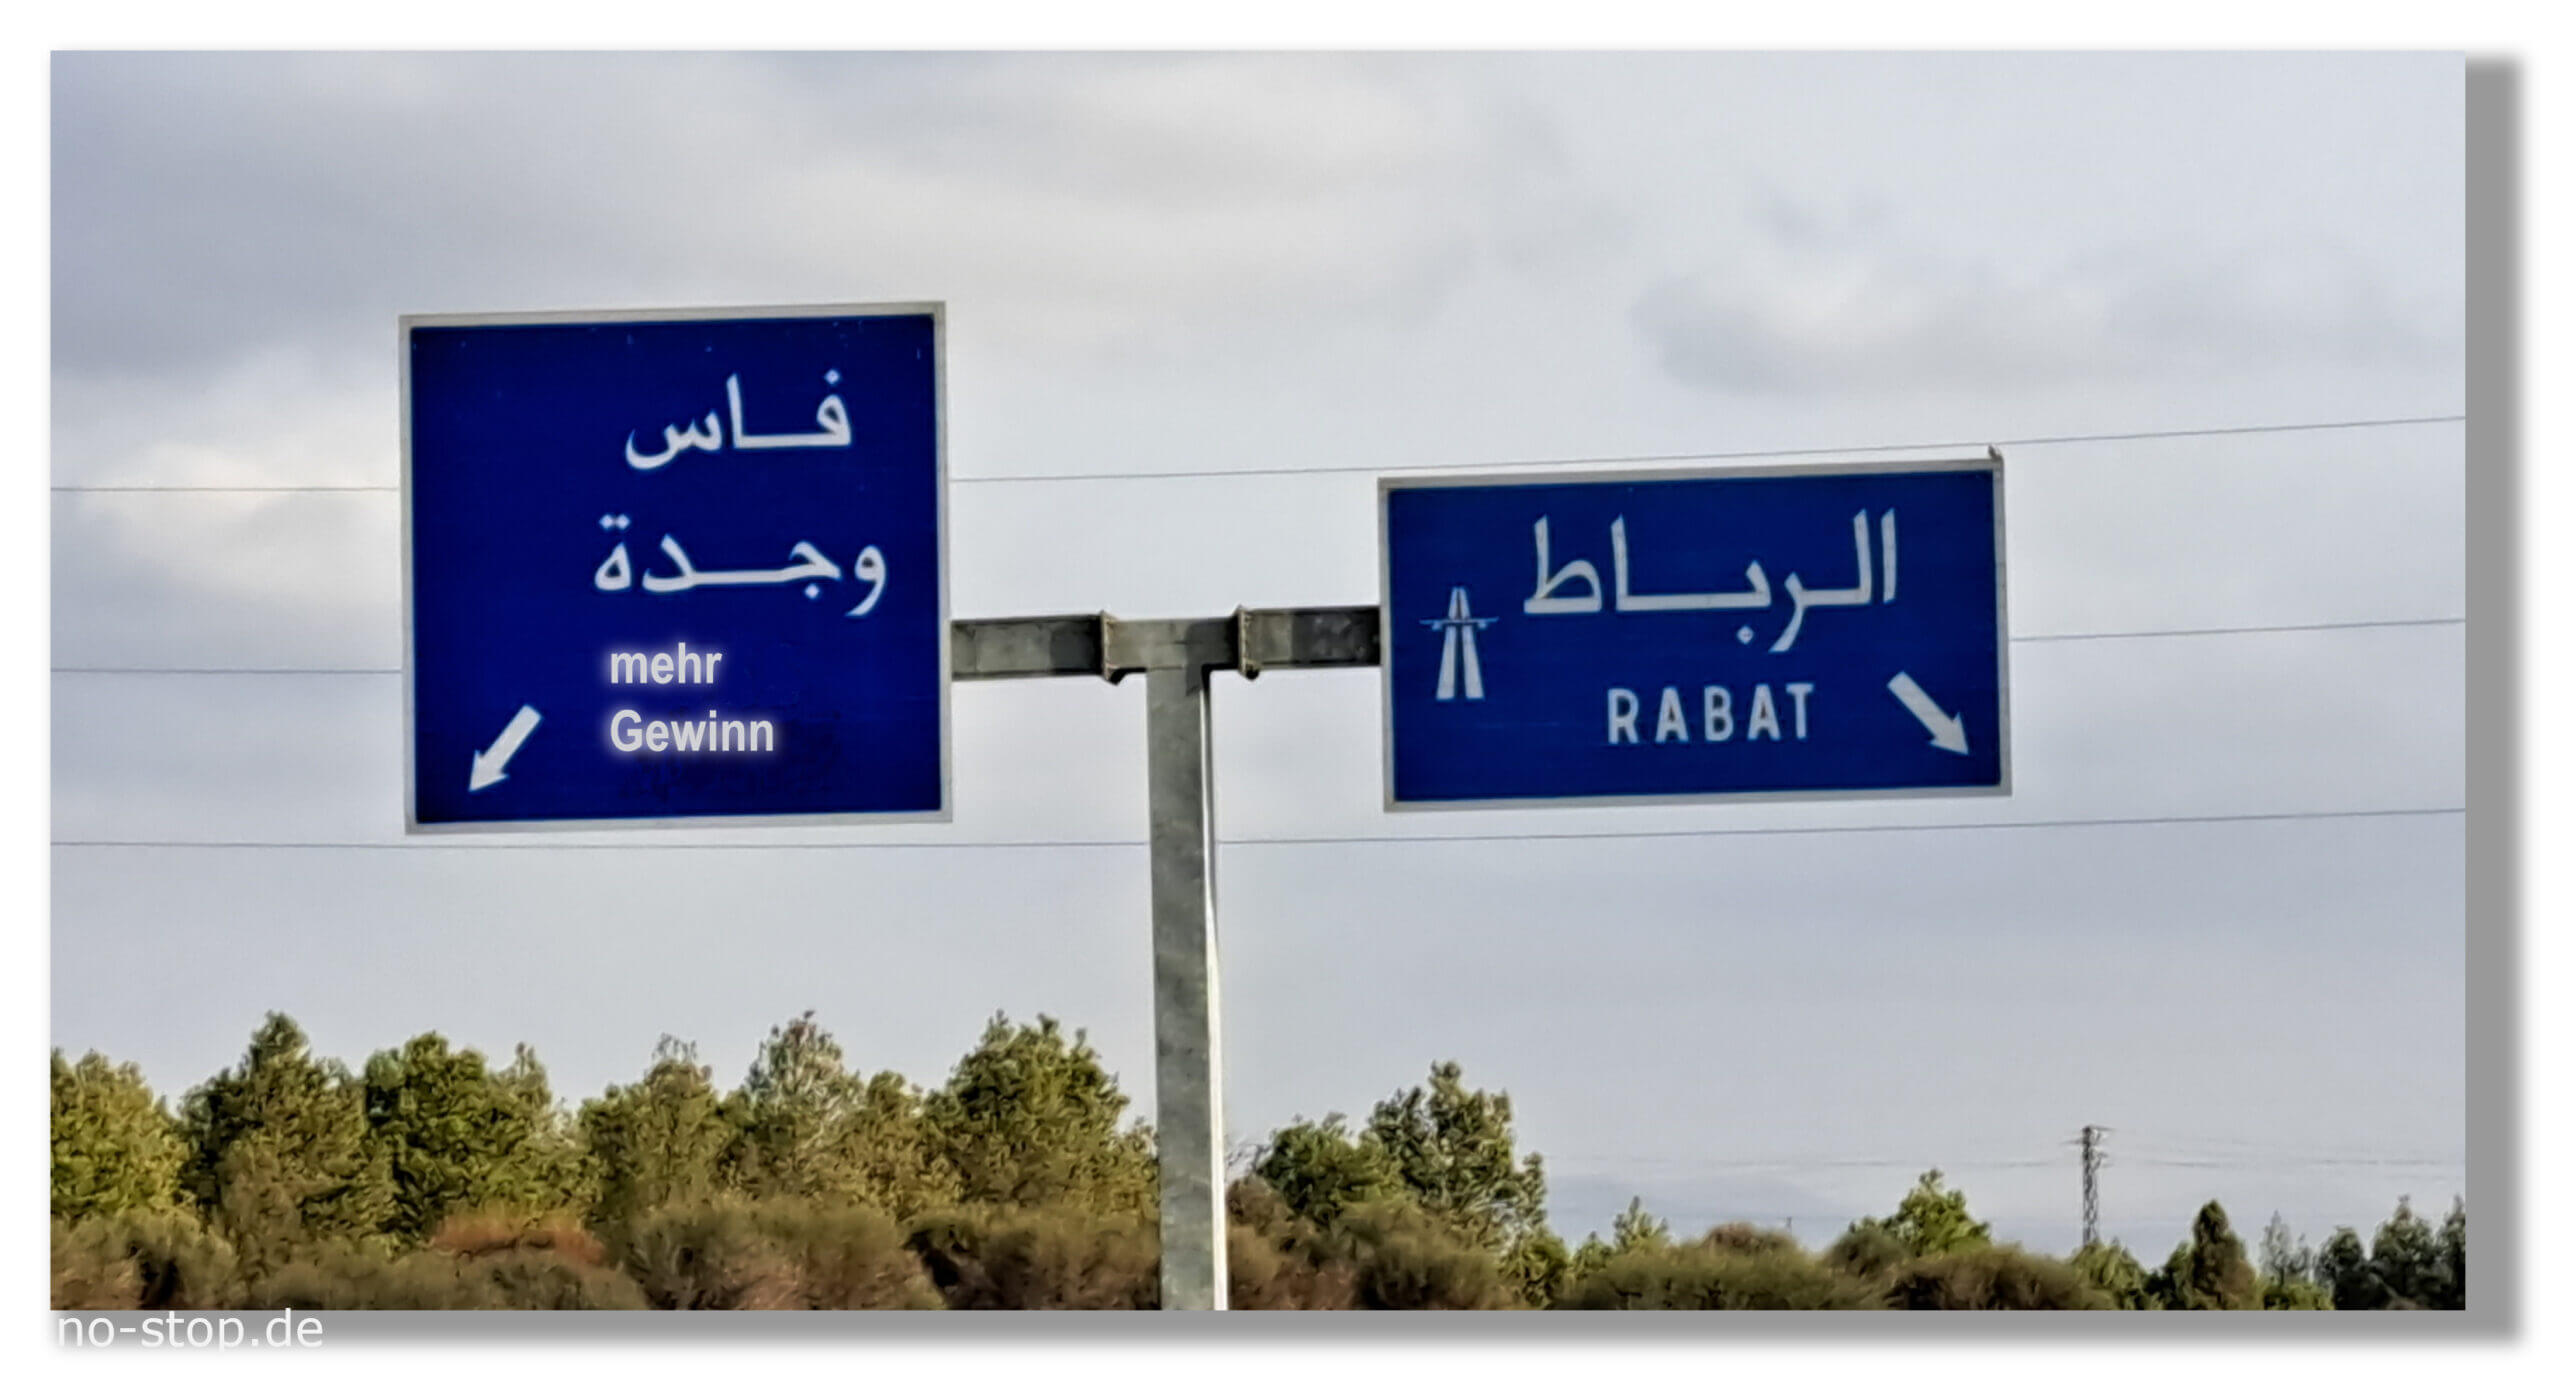 Rabat ist eine Stadt in Marokko - Schneller Rabatt versus mehr Gewinn